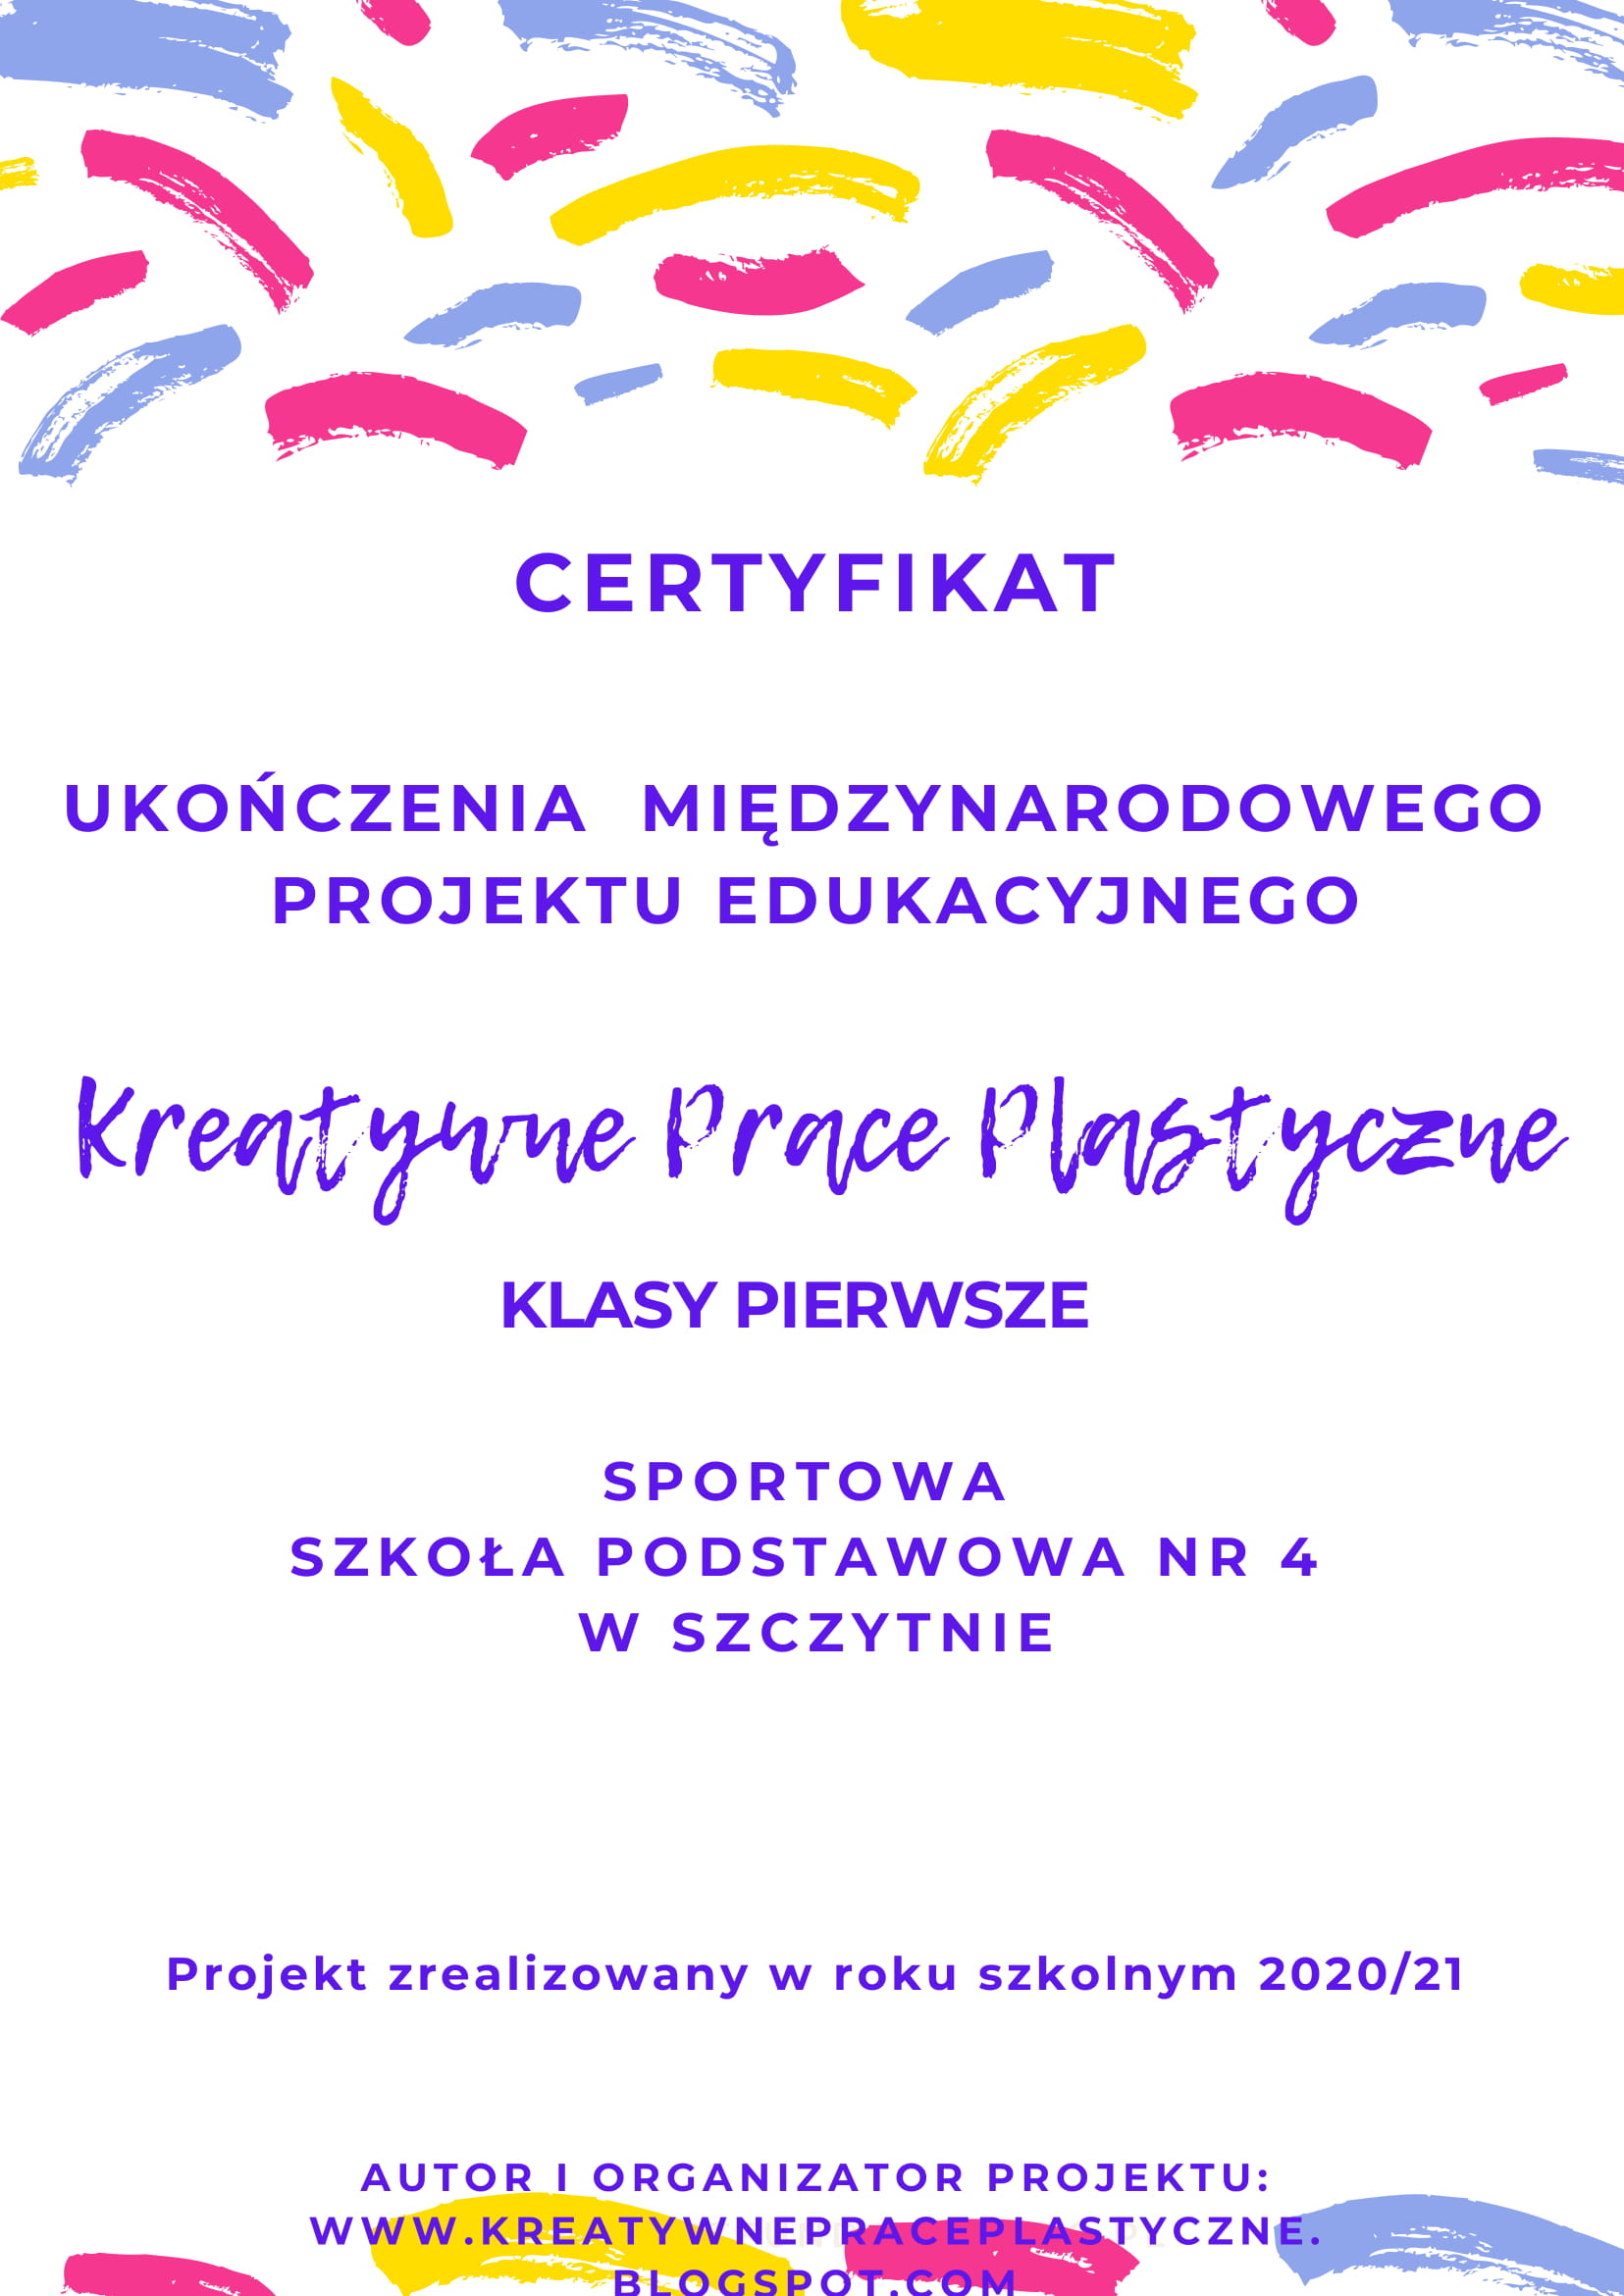 https://m.powiatszczycienski.pl/2021/05/orig/certyfikat-kpp1-37-2924-1-40527.jpg